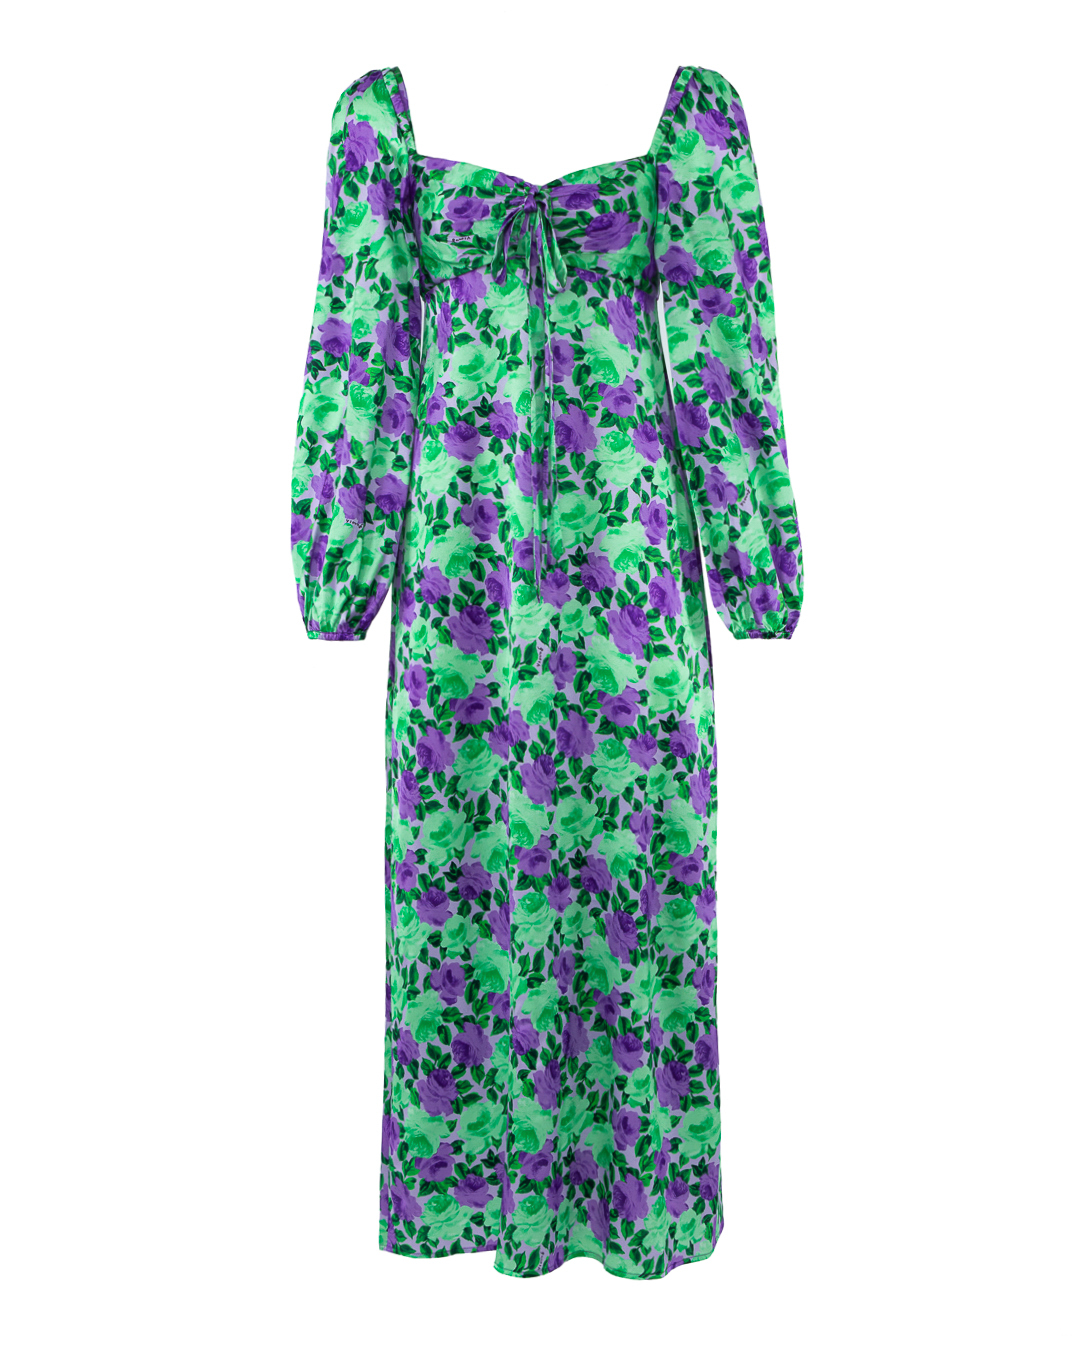 шелковое платье P.A.R.O.S.H. принт фланелевая пижама коралловое флисовое ночное платье халаты крытые домашние одежды средней длины халаты